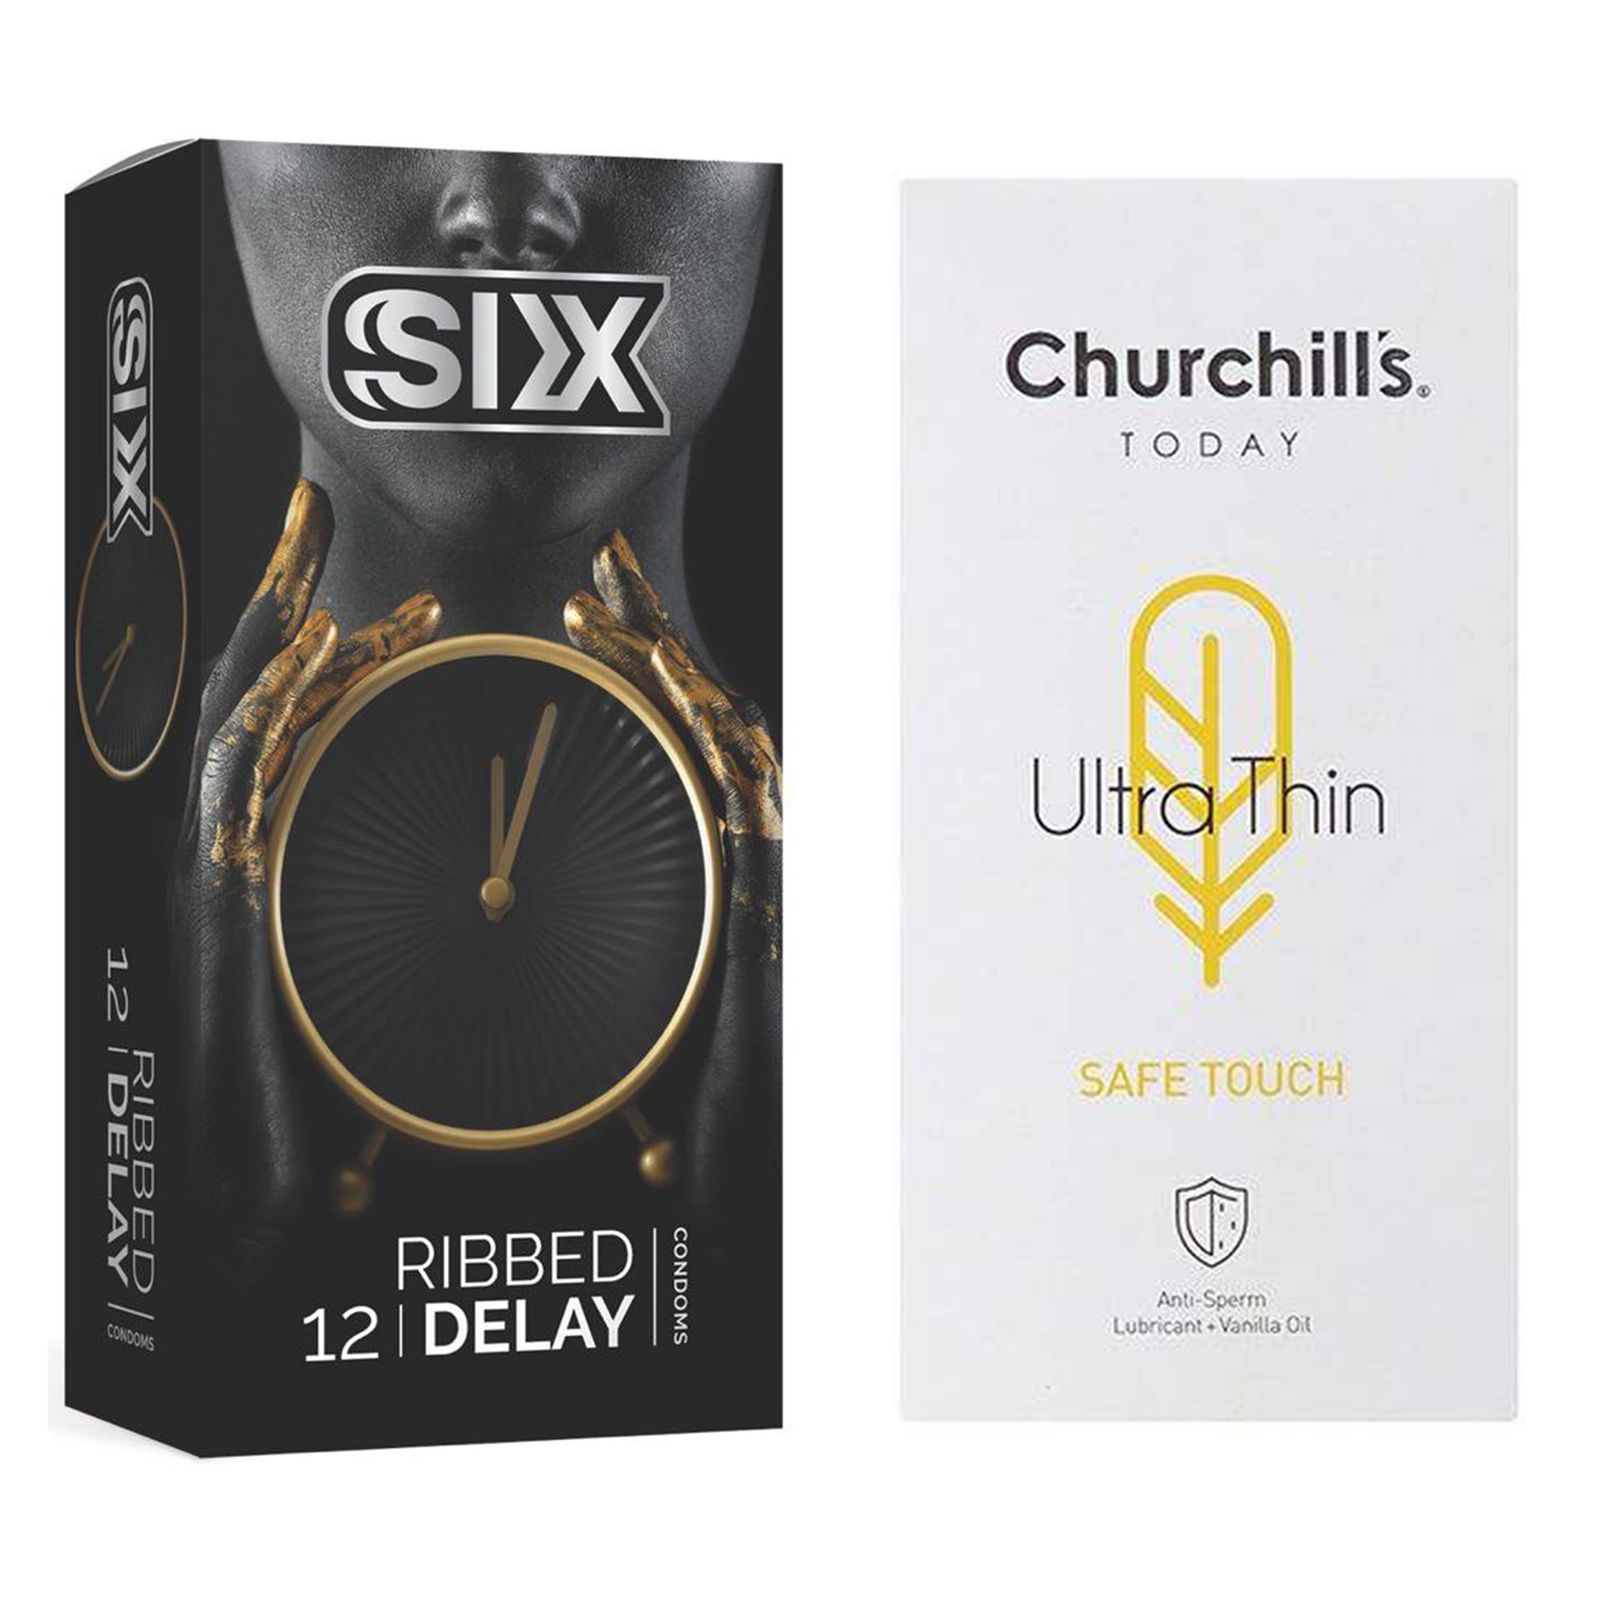 کاندوم چرچیلز مدل Safe Touch بسته 12 عددی به همراه کاندوم سیکس مدل تاخیری شیاردار بسته 12 عددی